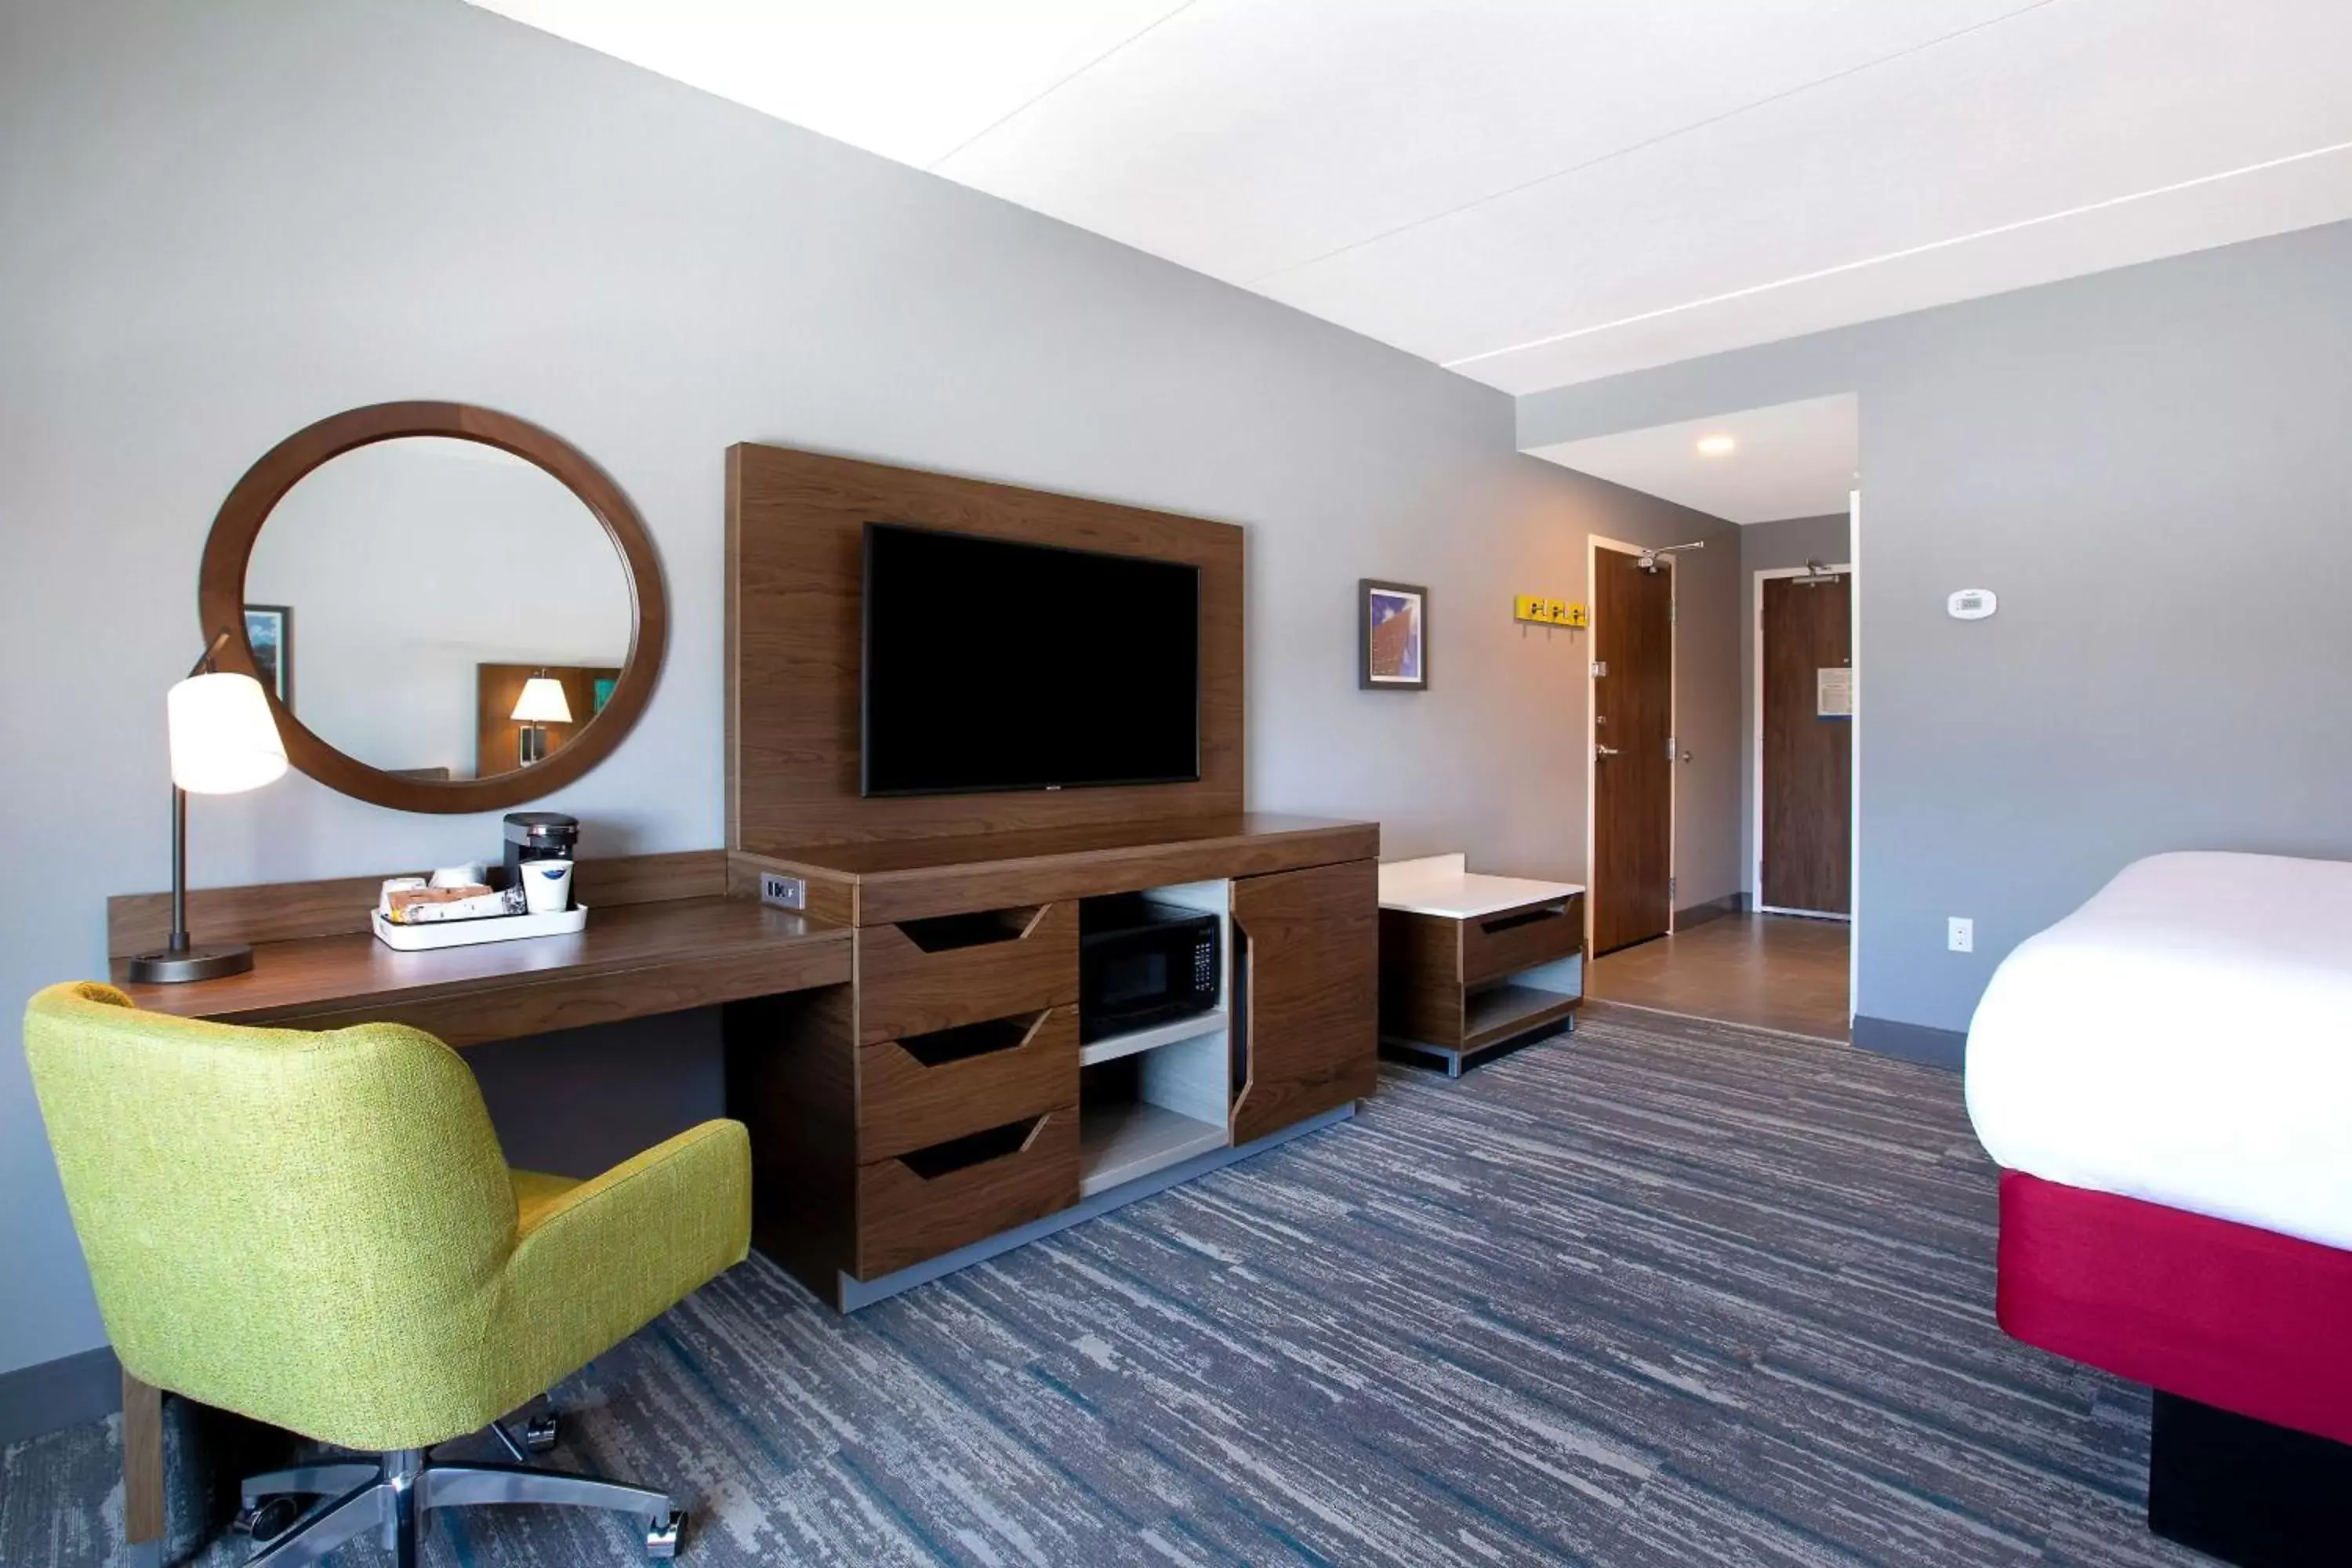 Bedroom, TV/Entertainment Center in Hampton Inn & Suites Ottawa West, Ontario, Canada